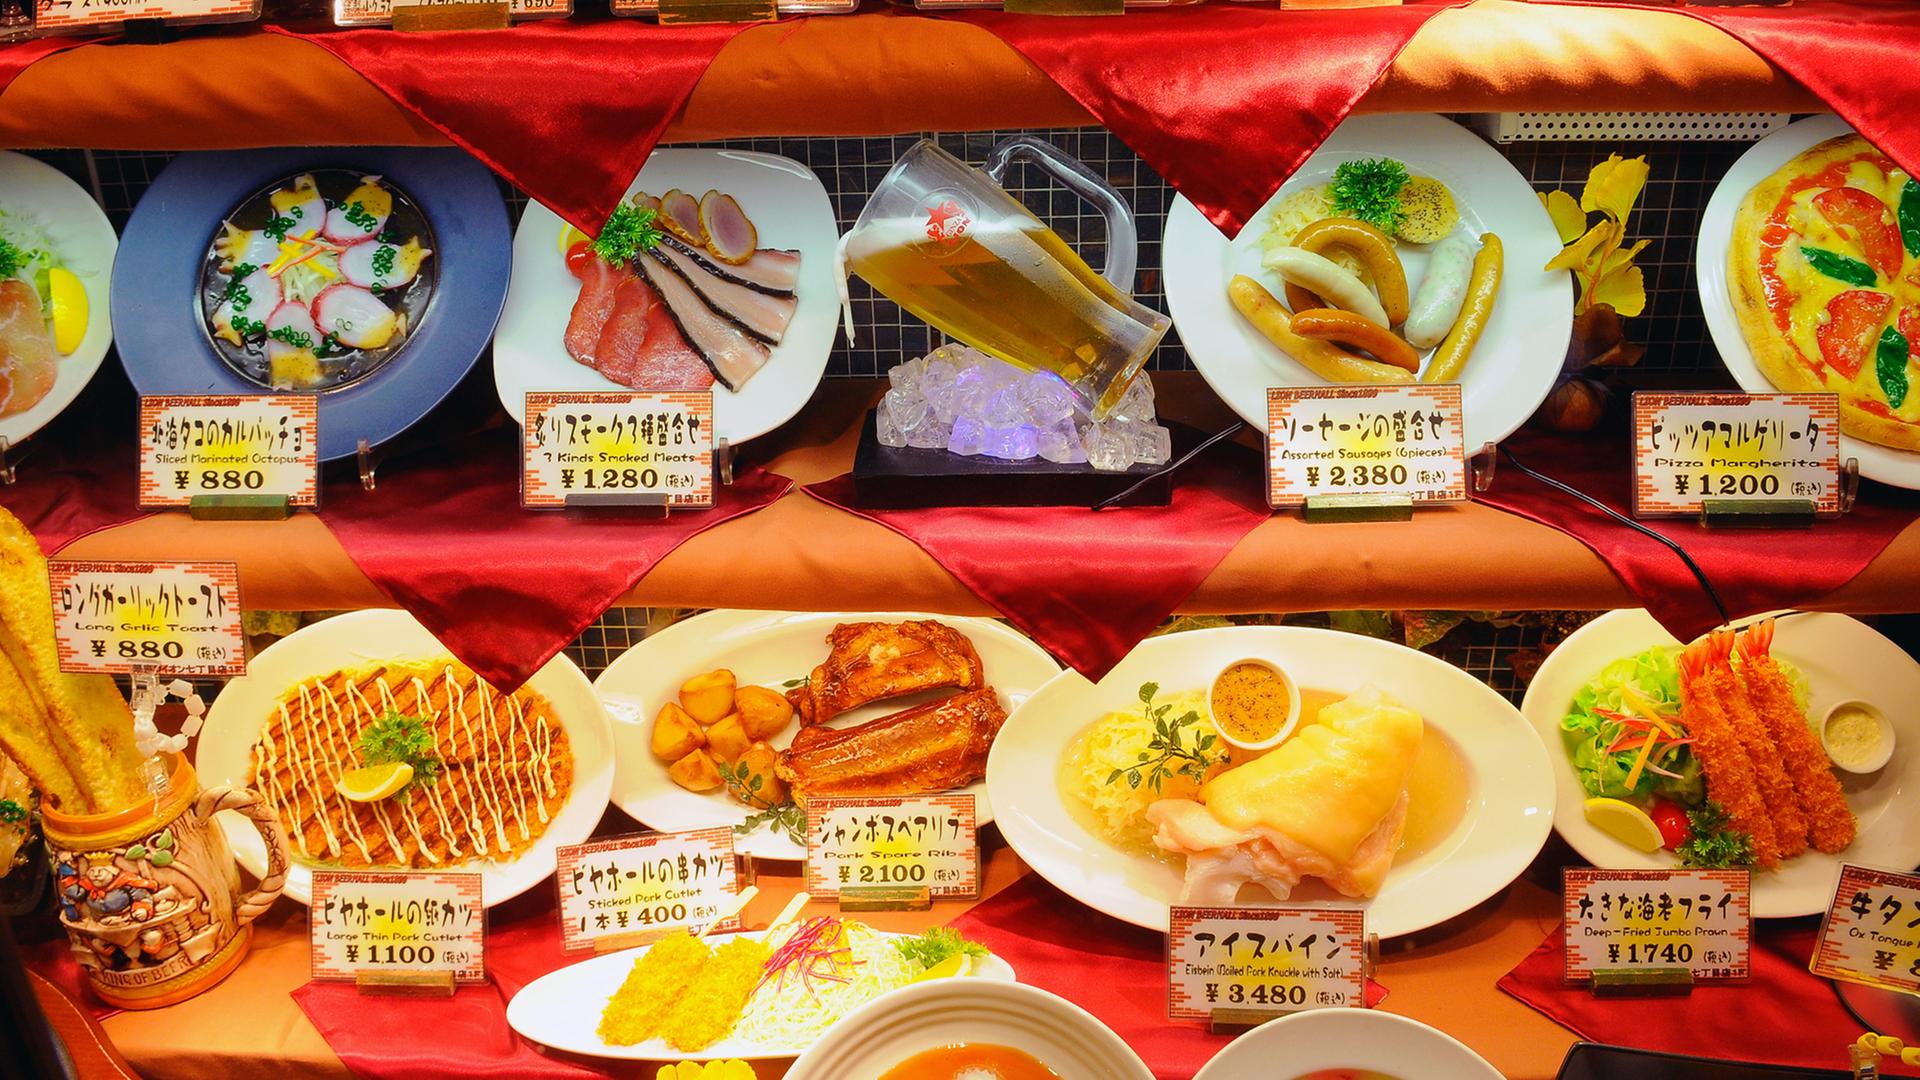 Werbung für deutsches Essen in einem japanischen Restaurant in Tokio.